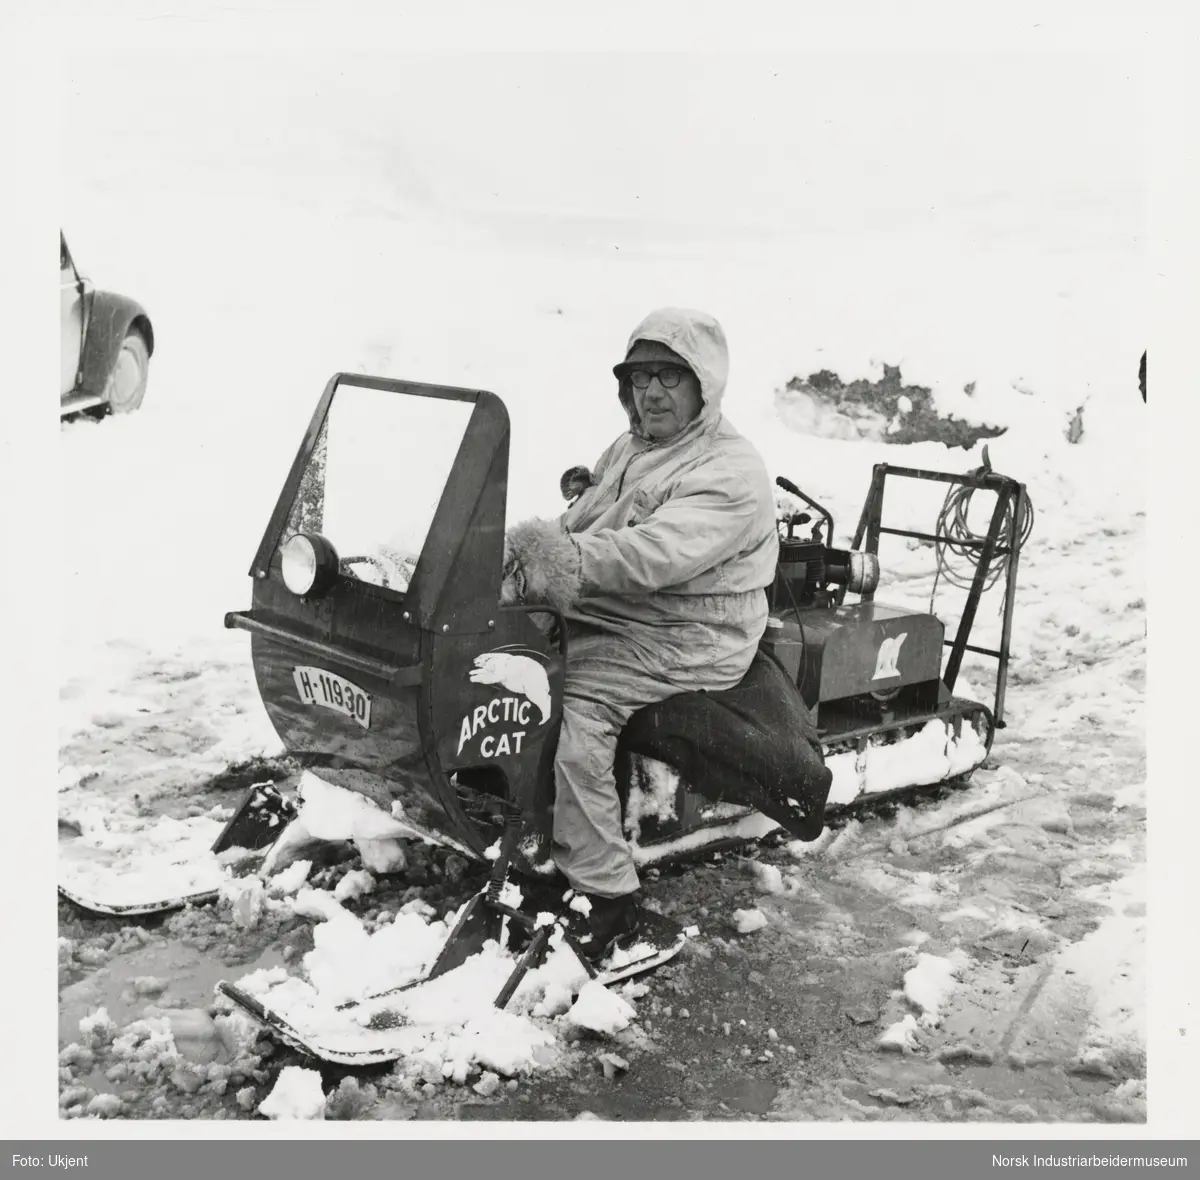 James Coward sittende på snøskuter av merken Arctic cat. Påsken 1965